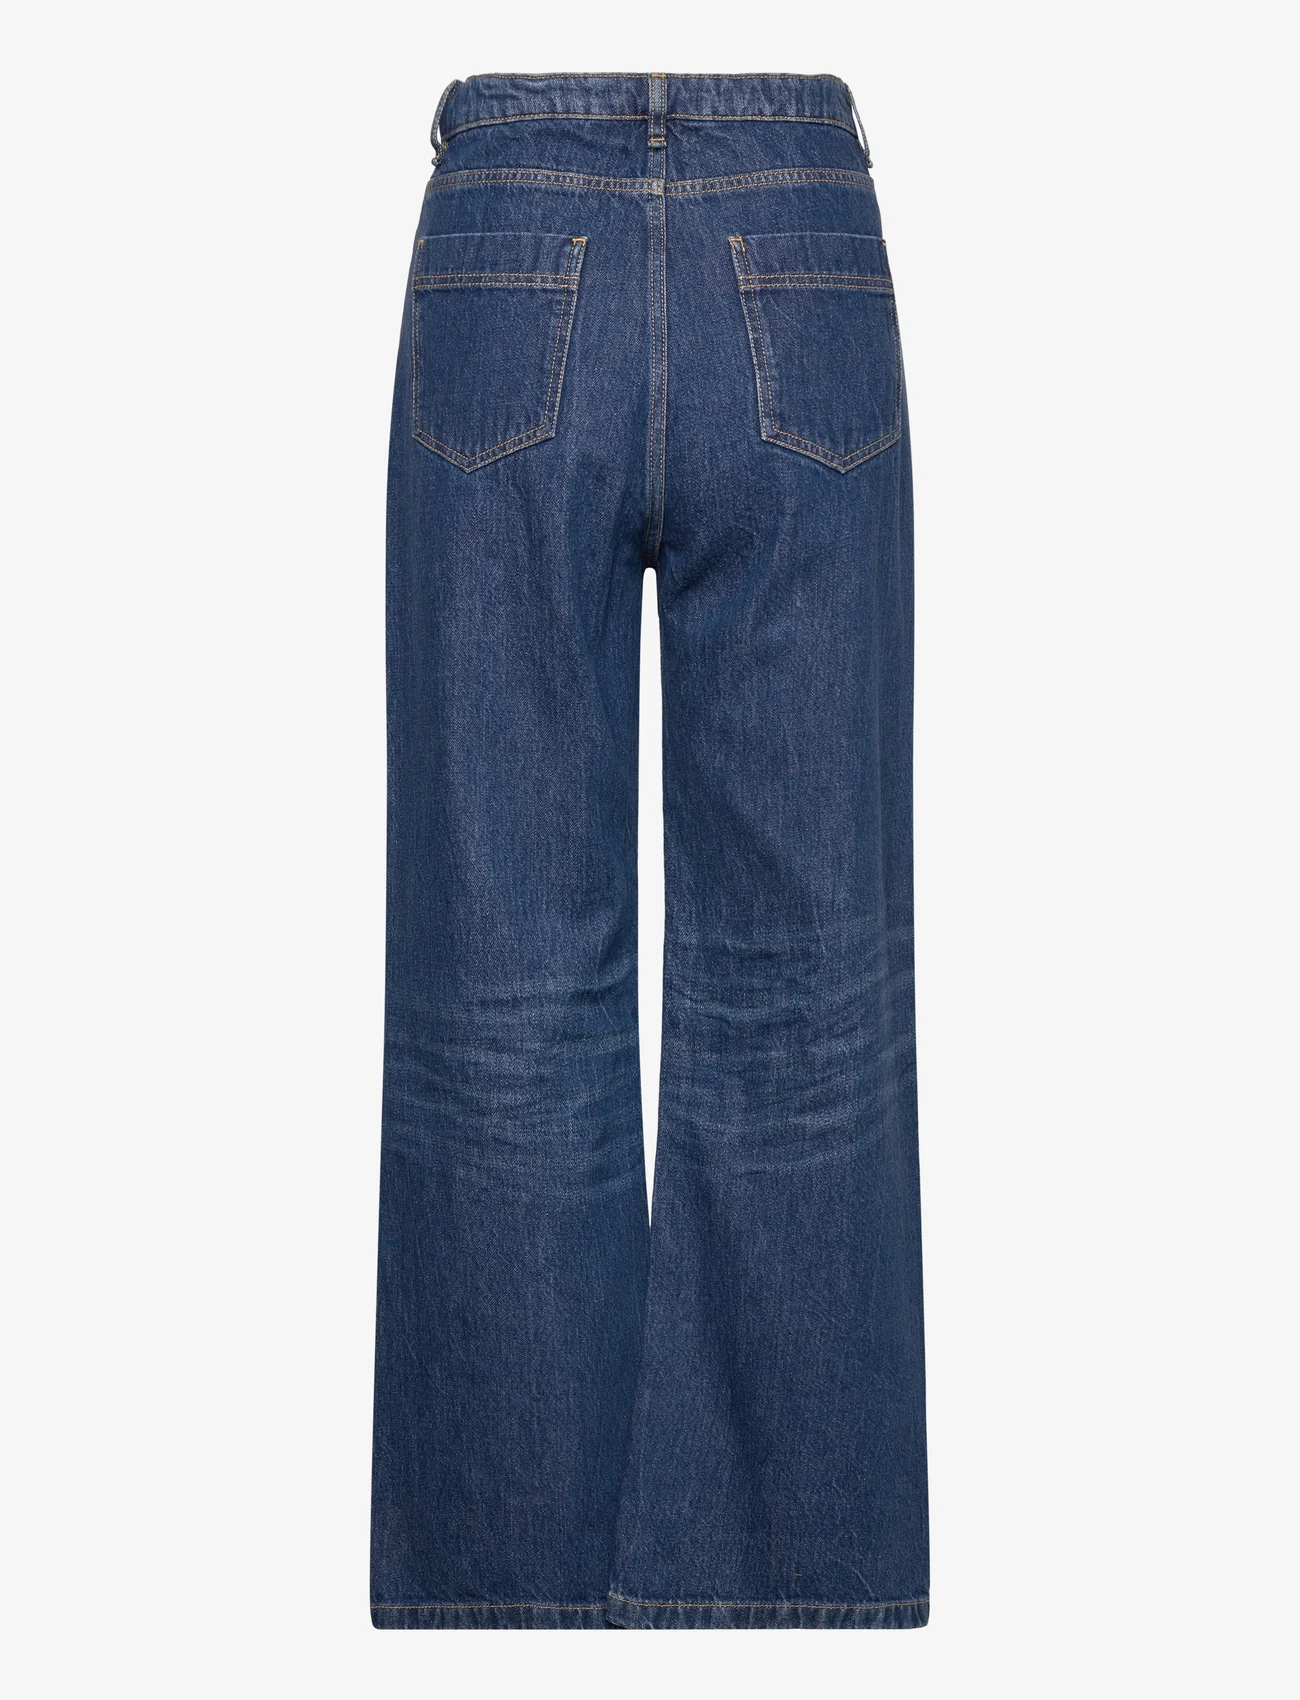 Wood Wood - Ellie Baggy Jeans - laia säärega teksad - worn blue - 1